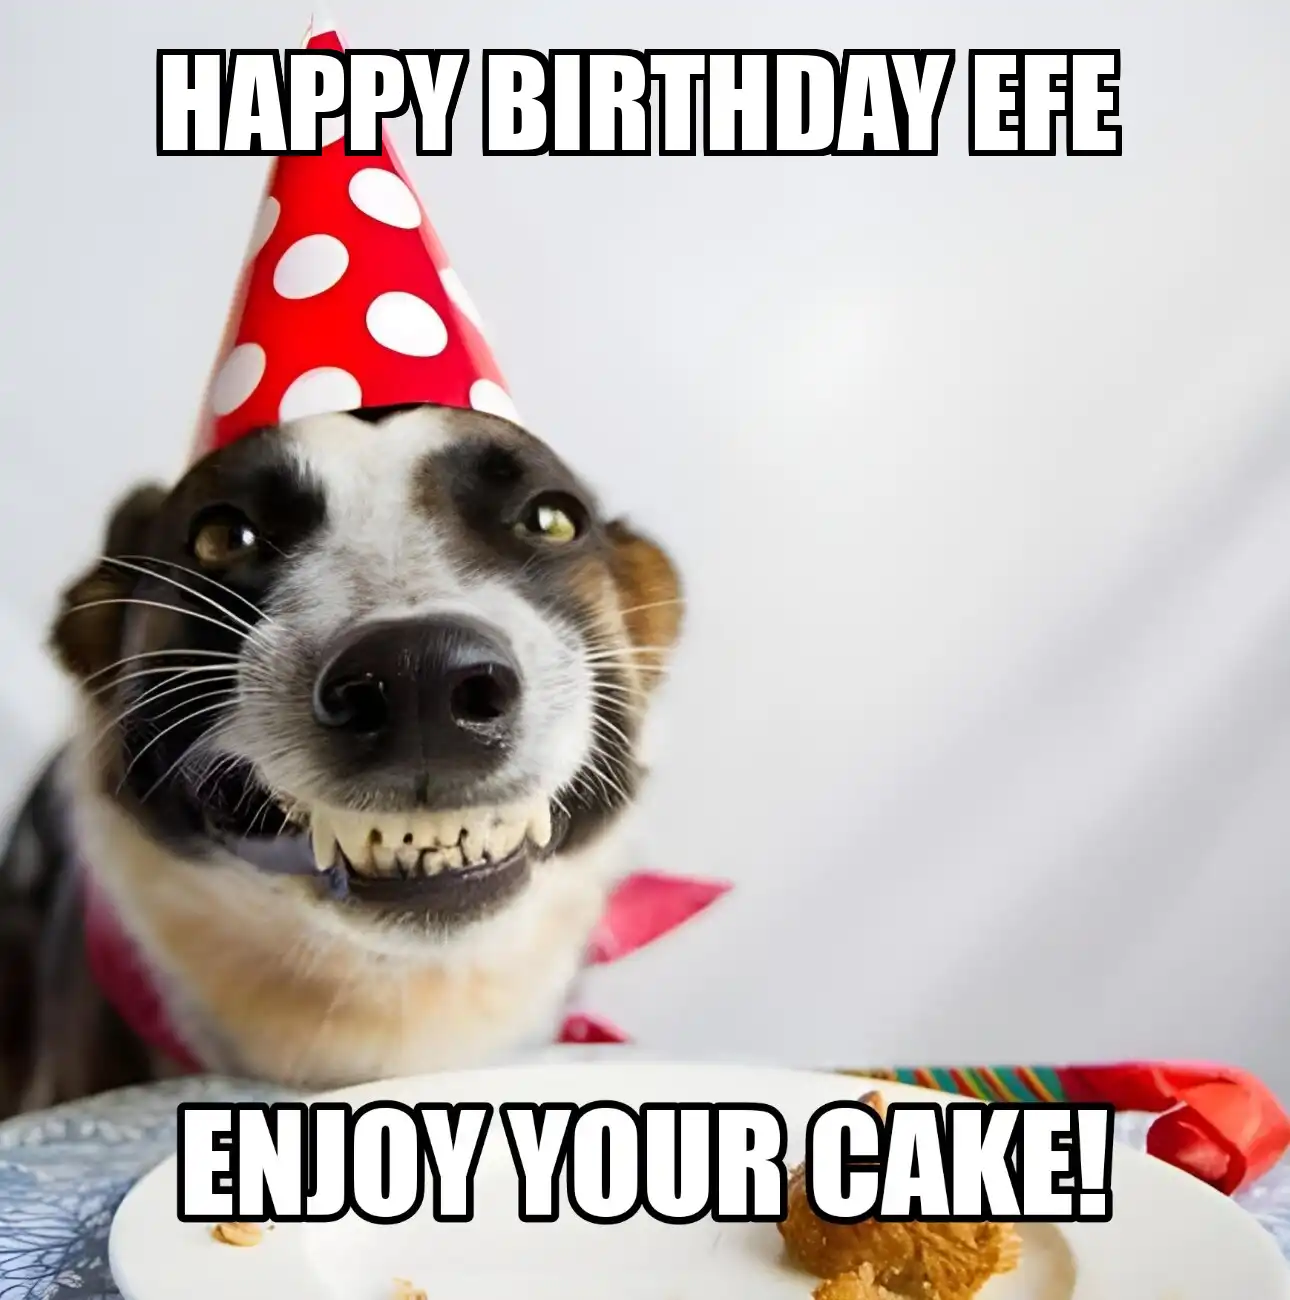 Happy Birthday Efe Enjoy Your Cake Dog Meme